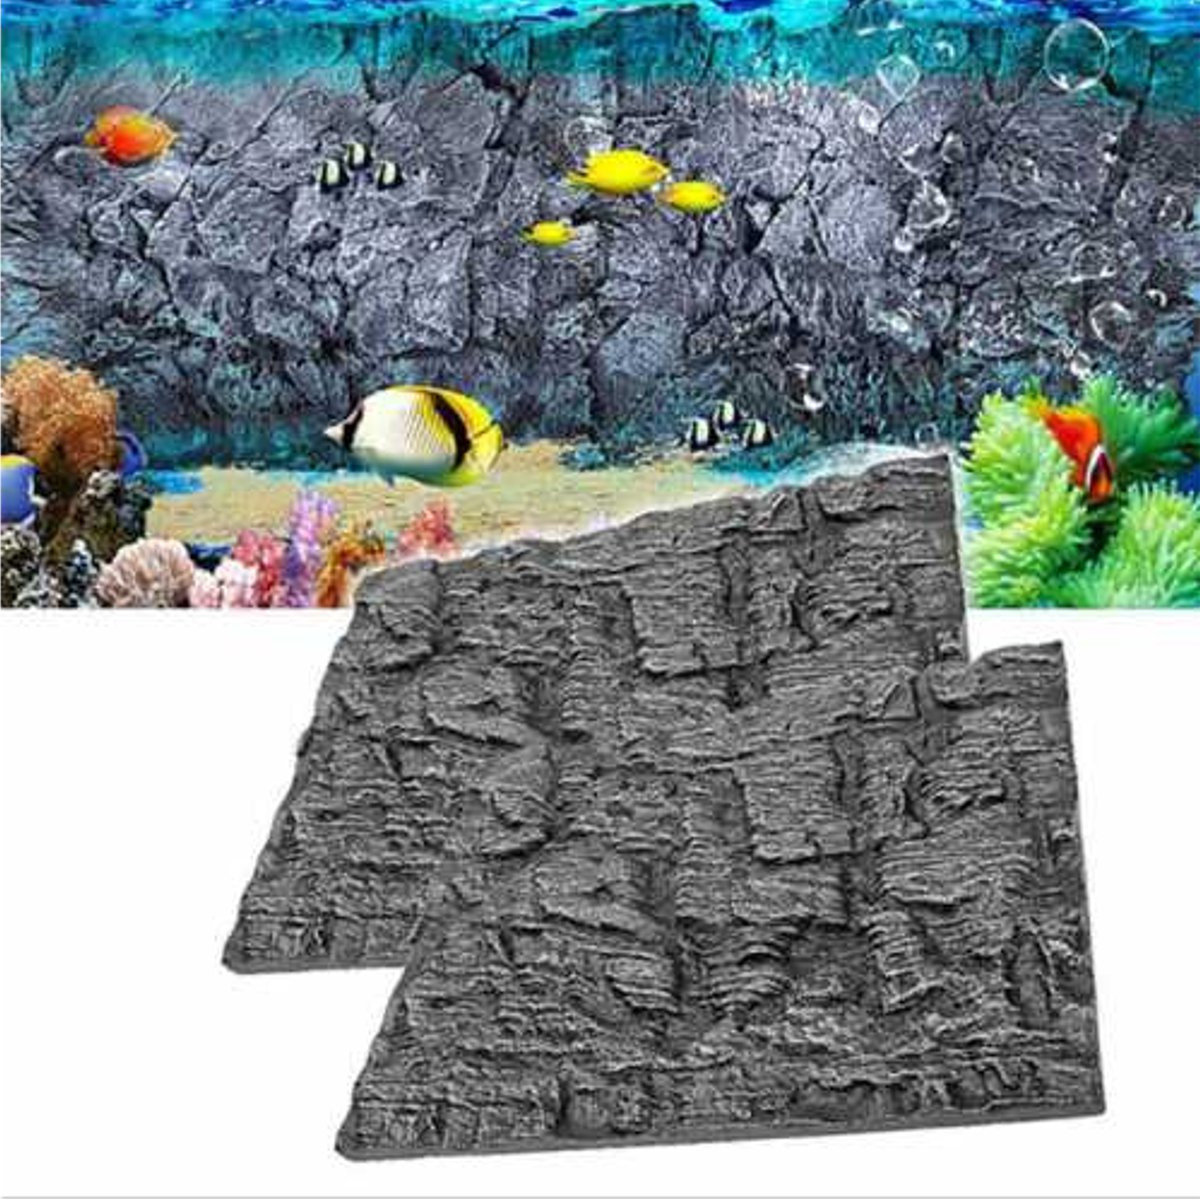 

3D Foam Rock Reptile Aquarium Fish Tank Background Backdrop 24'' X 18'' Home Decor